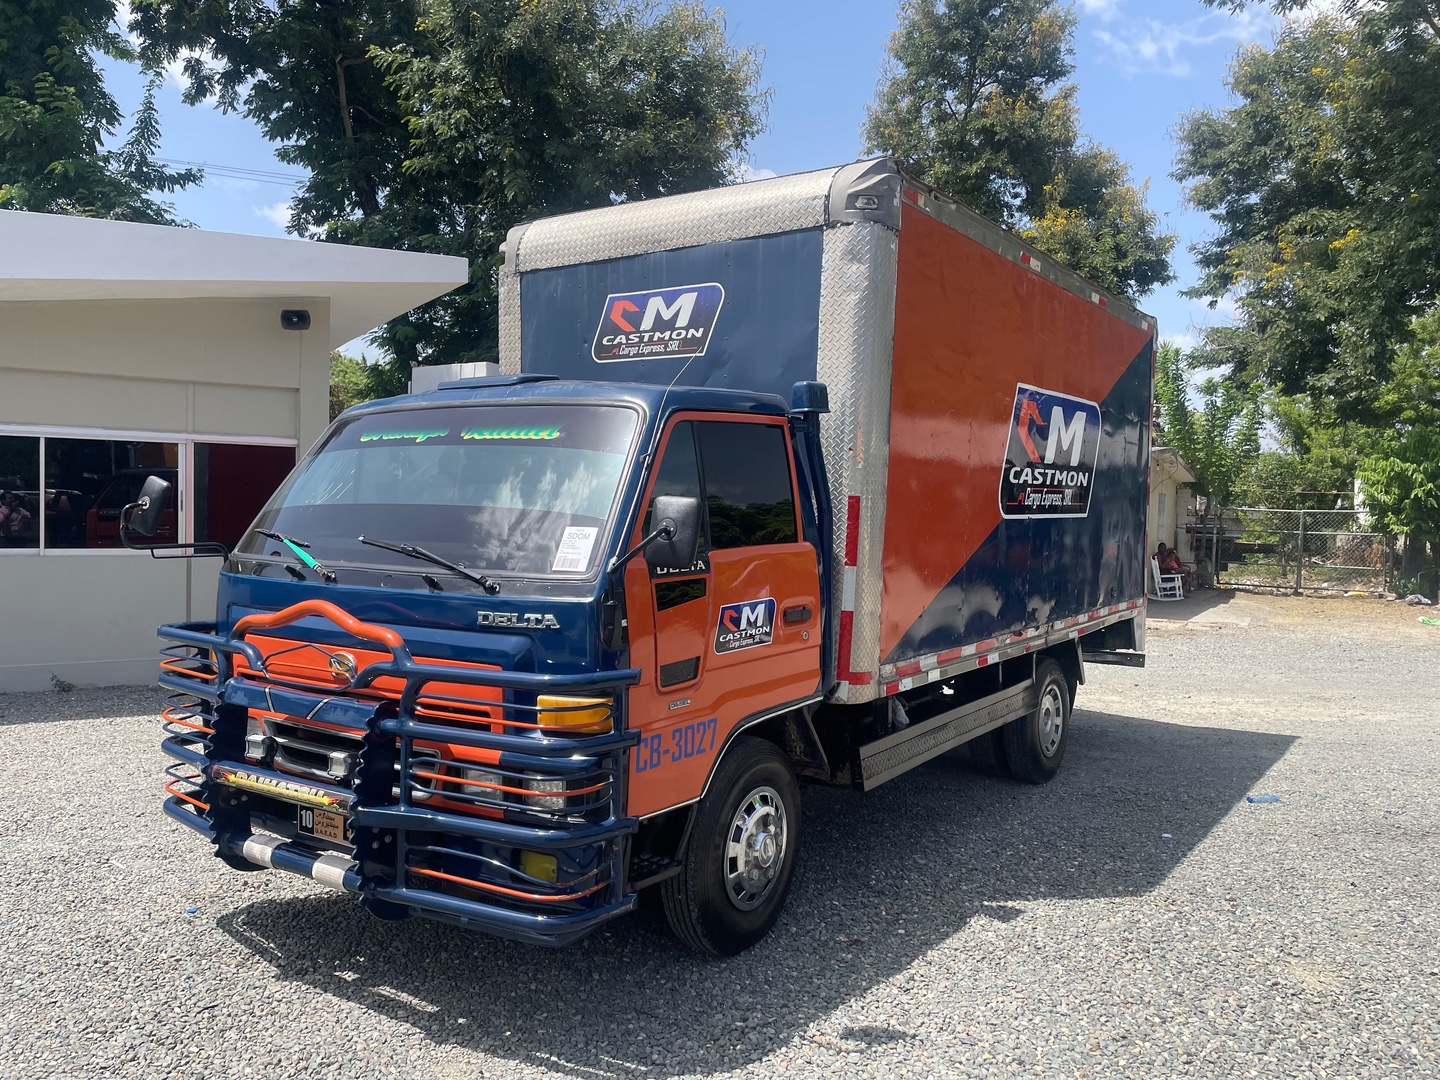 camiones y vehiculos pesados - Camión Daihatsu 2001 ancho $700,000